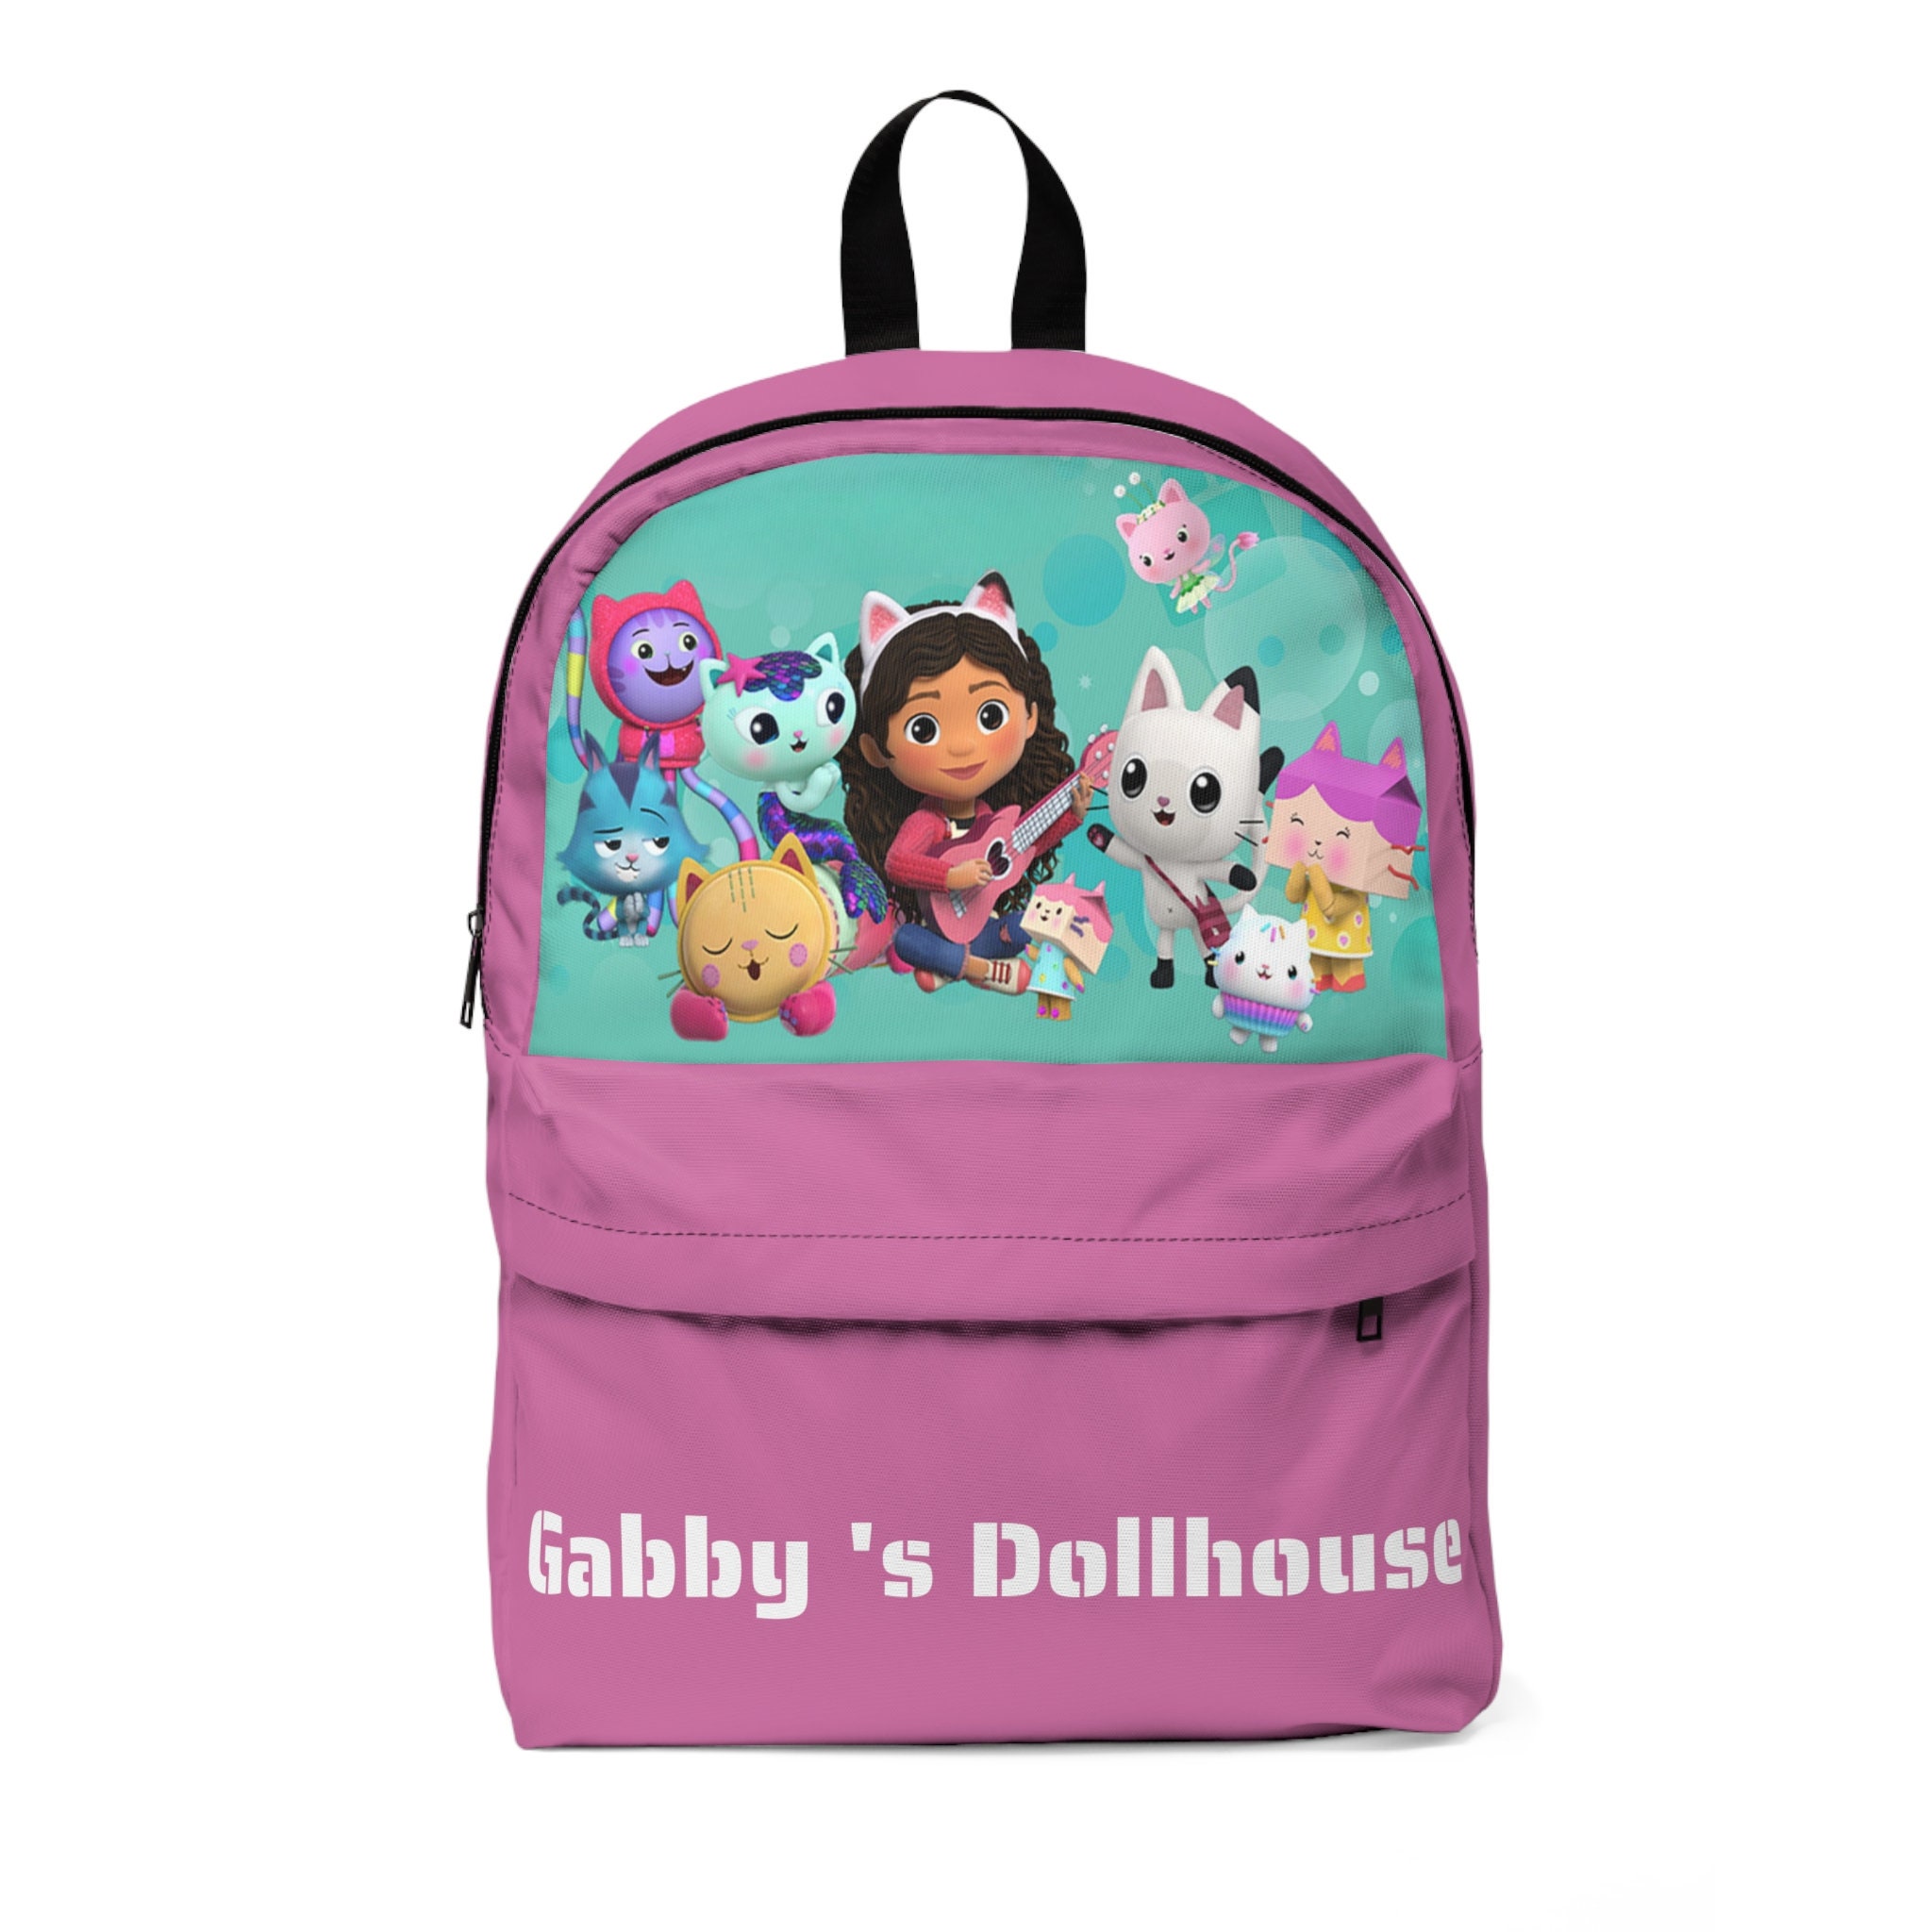 Dollhouse Backpack - Gabby's Dollhouse →